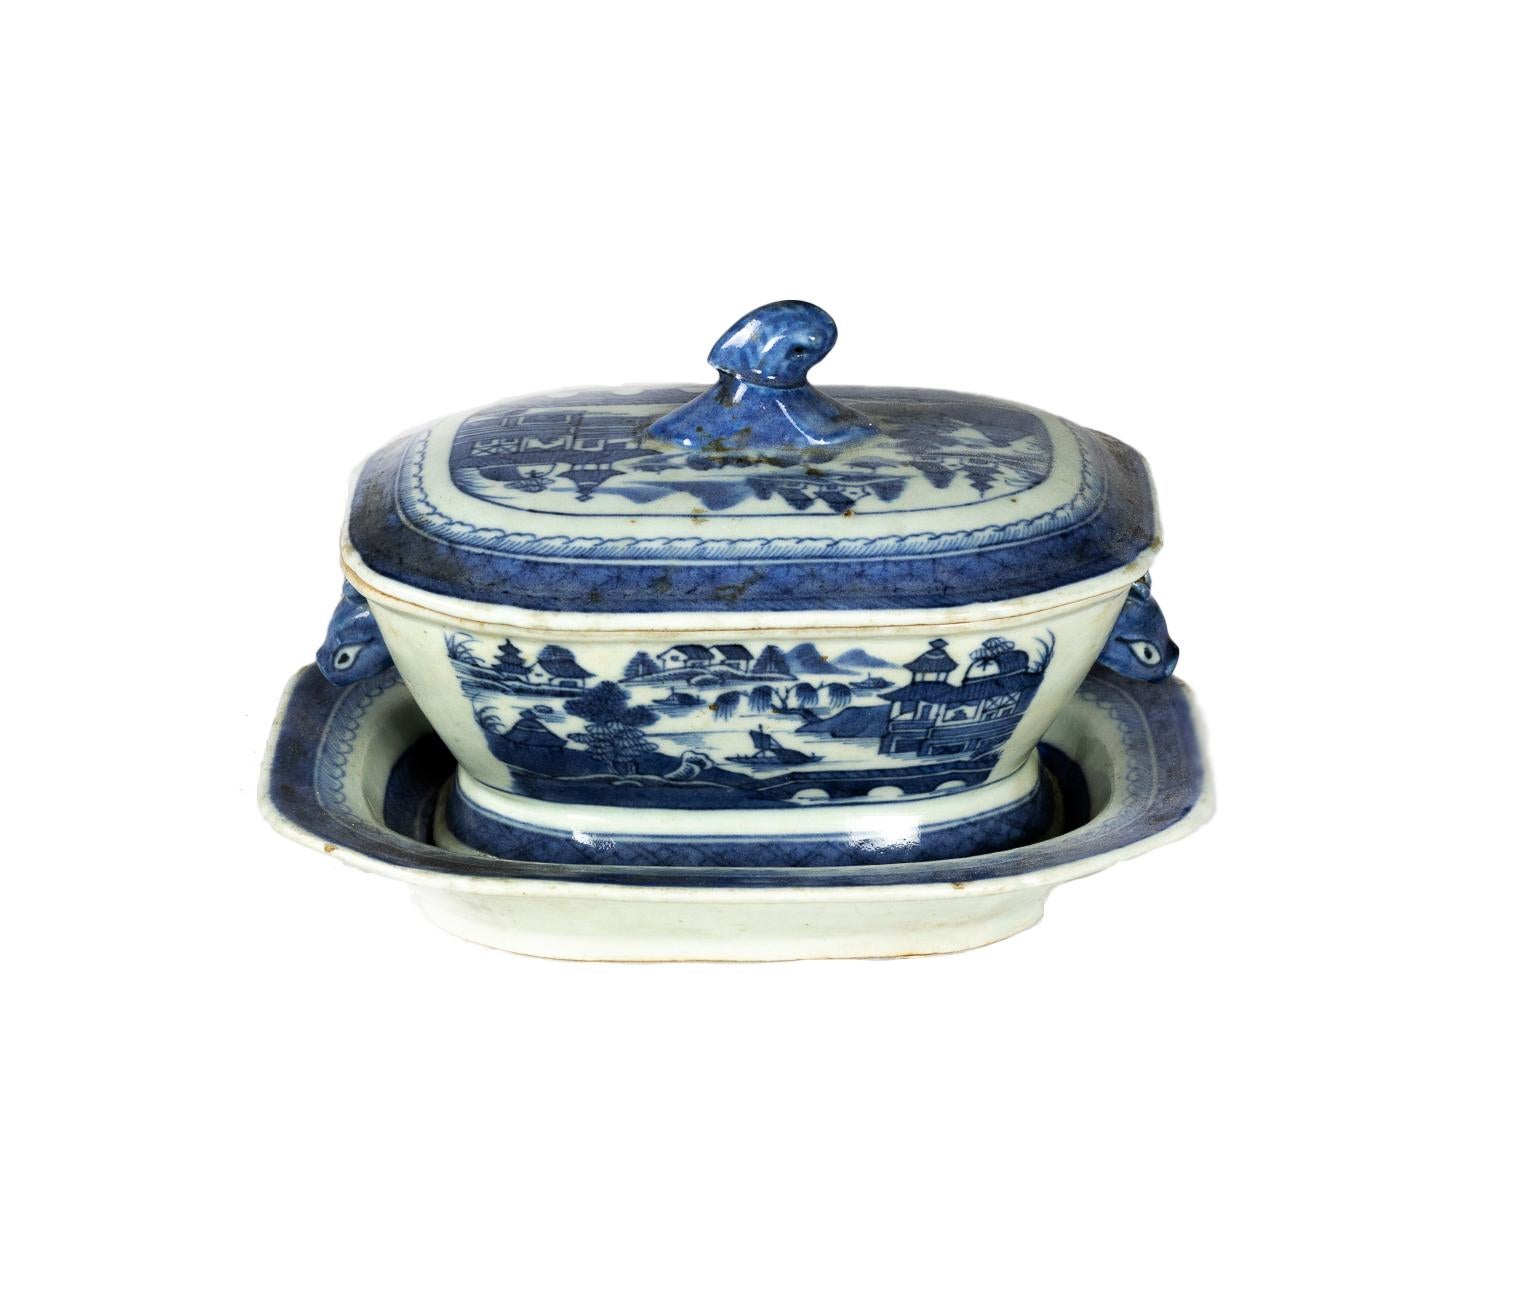 An antique blue porcelain 